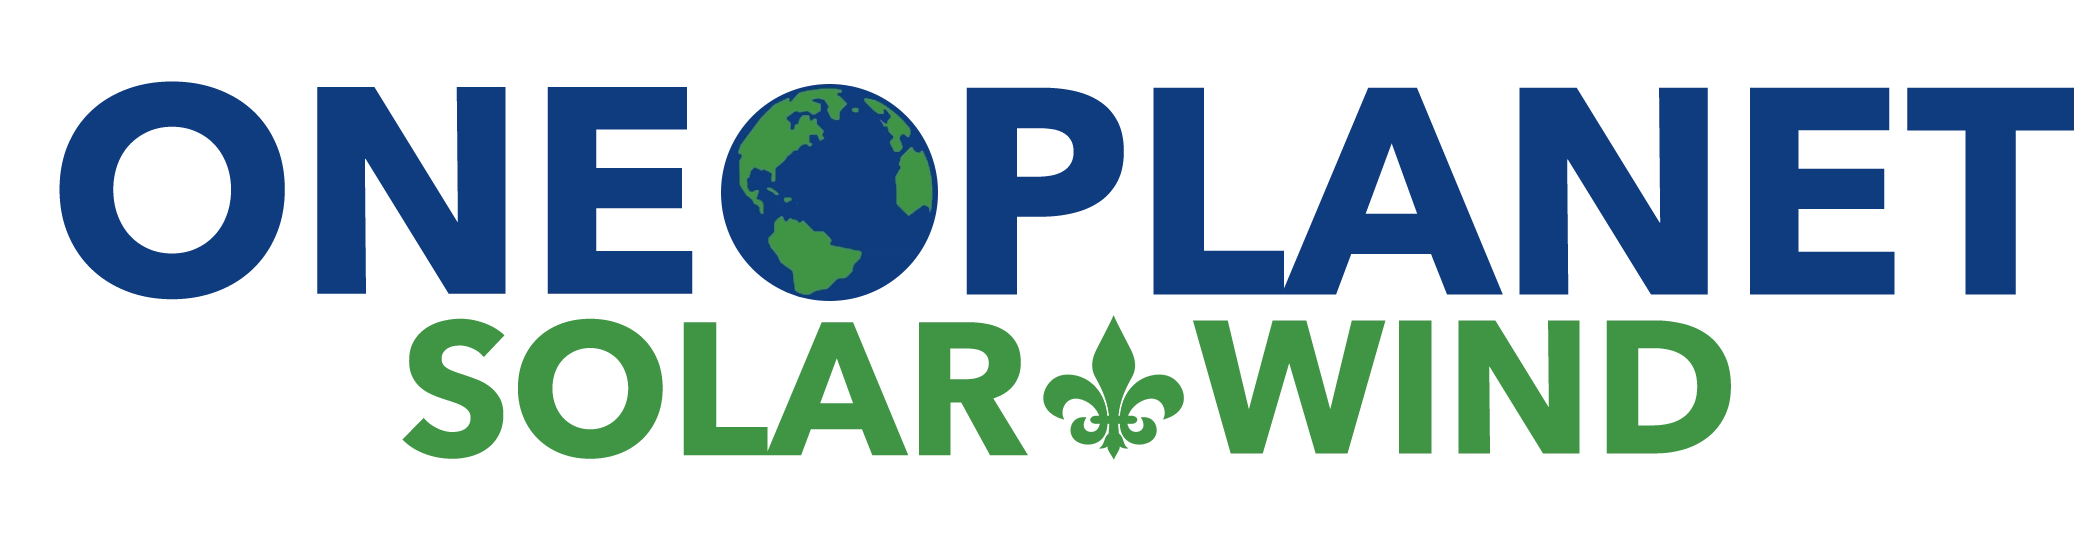 One Planet Solar & Wind LLC Logo